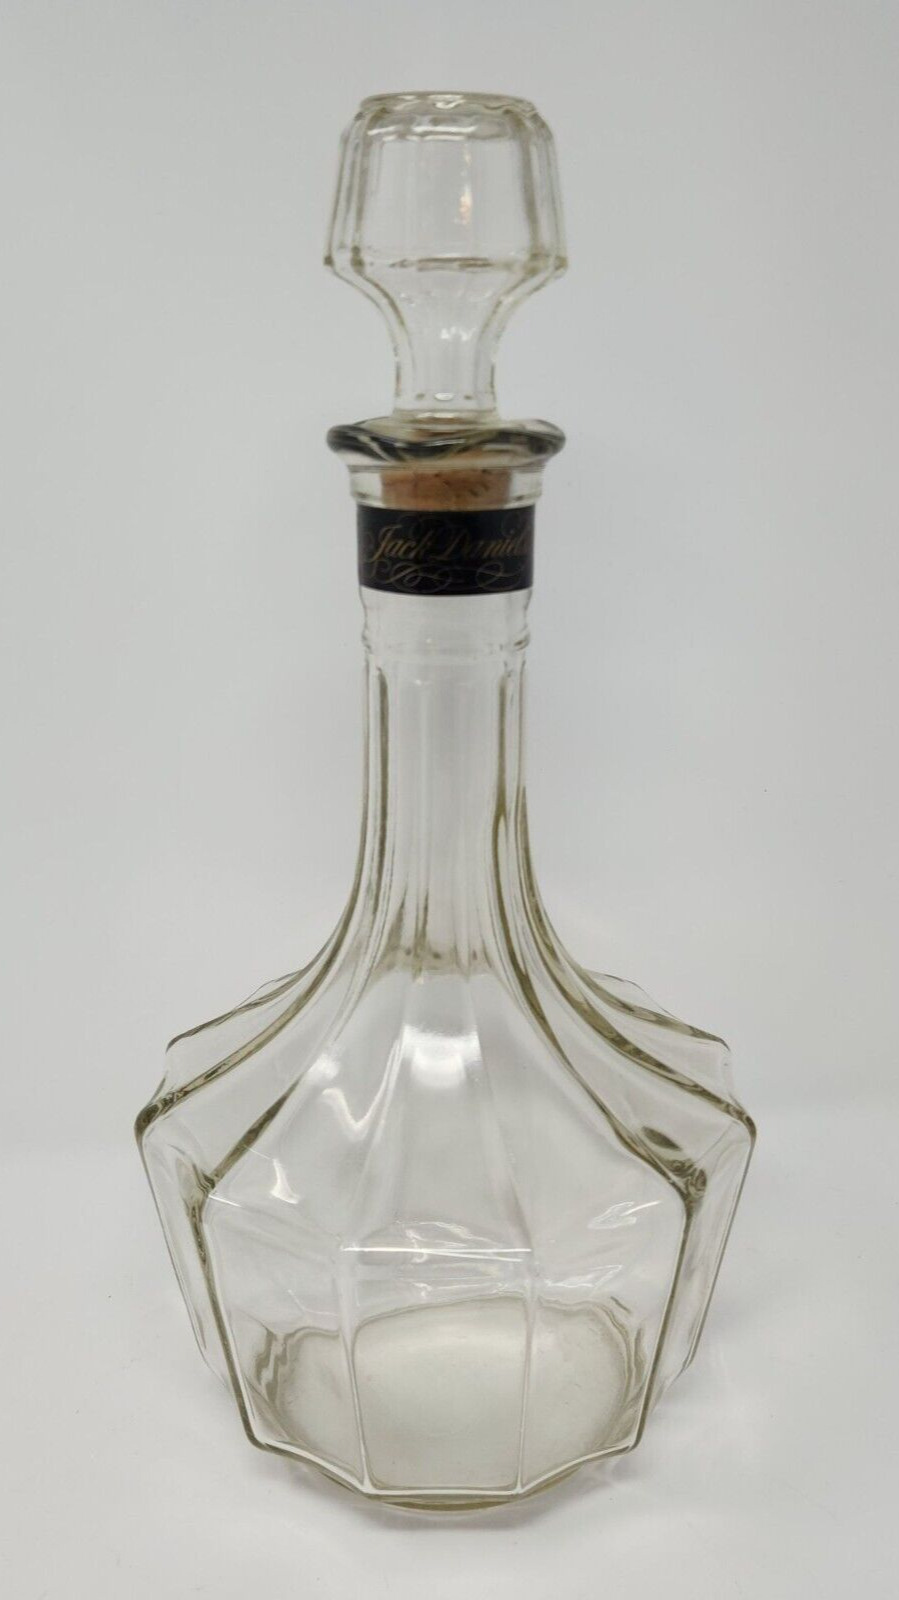 Vintage Jack Daniels Old No 7 Silver Cornet Whiskey Decanter Bottle Vintage